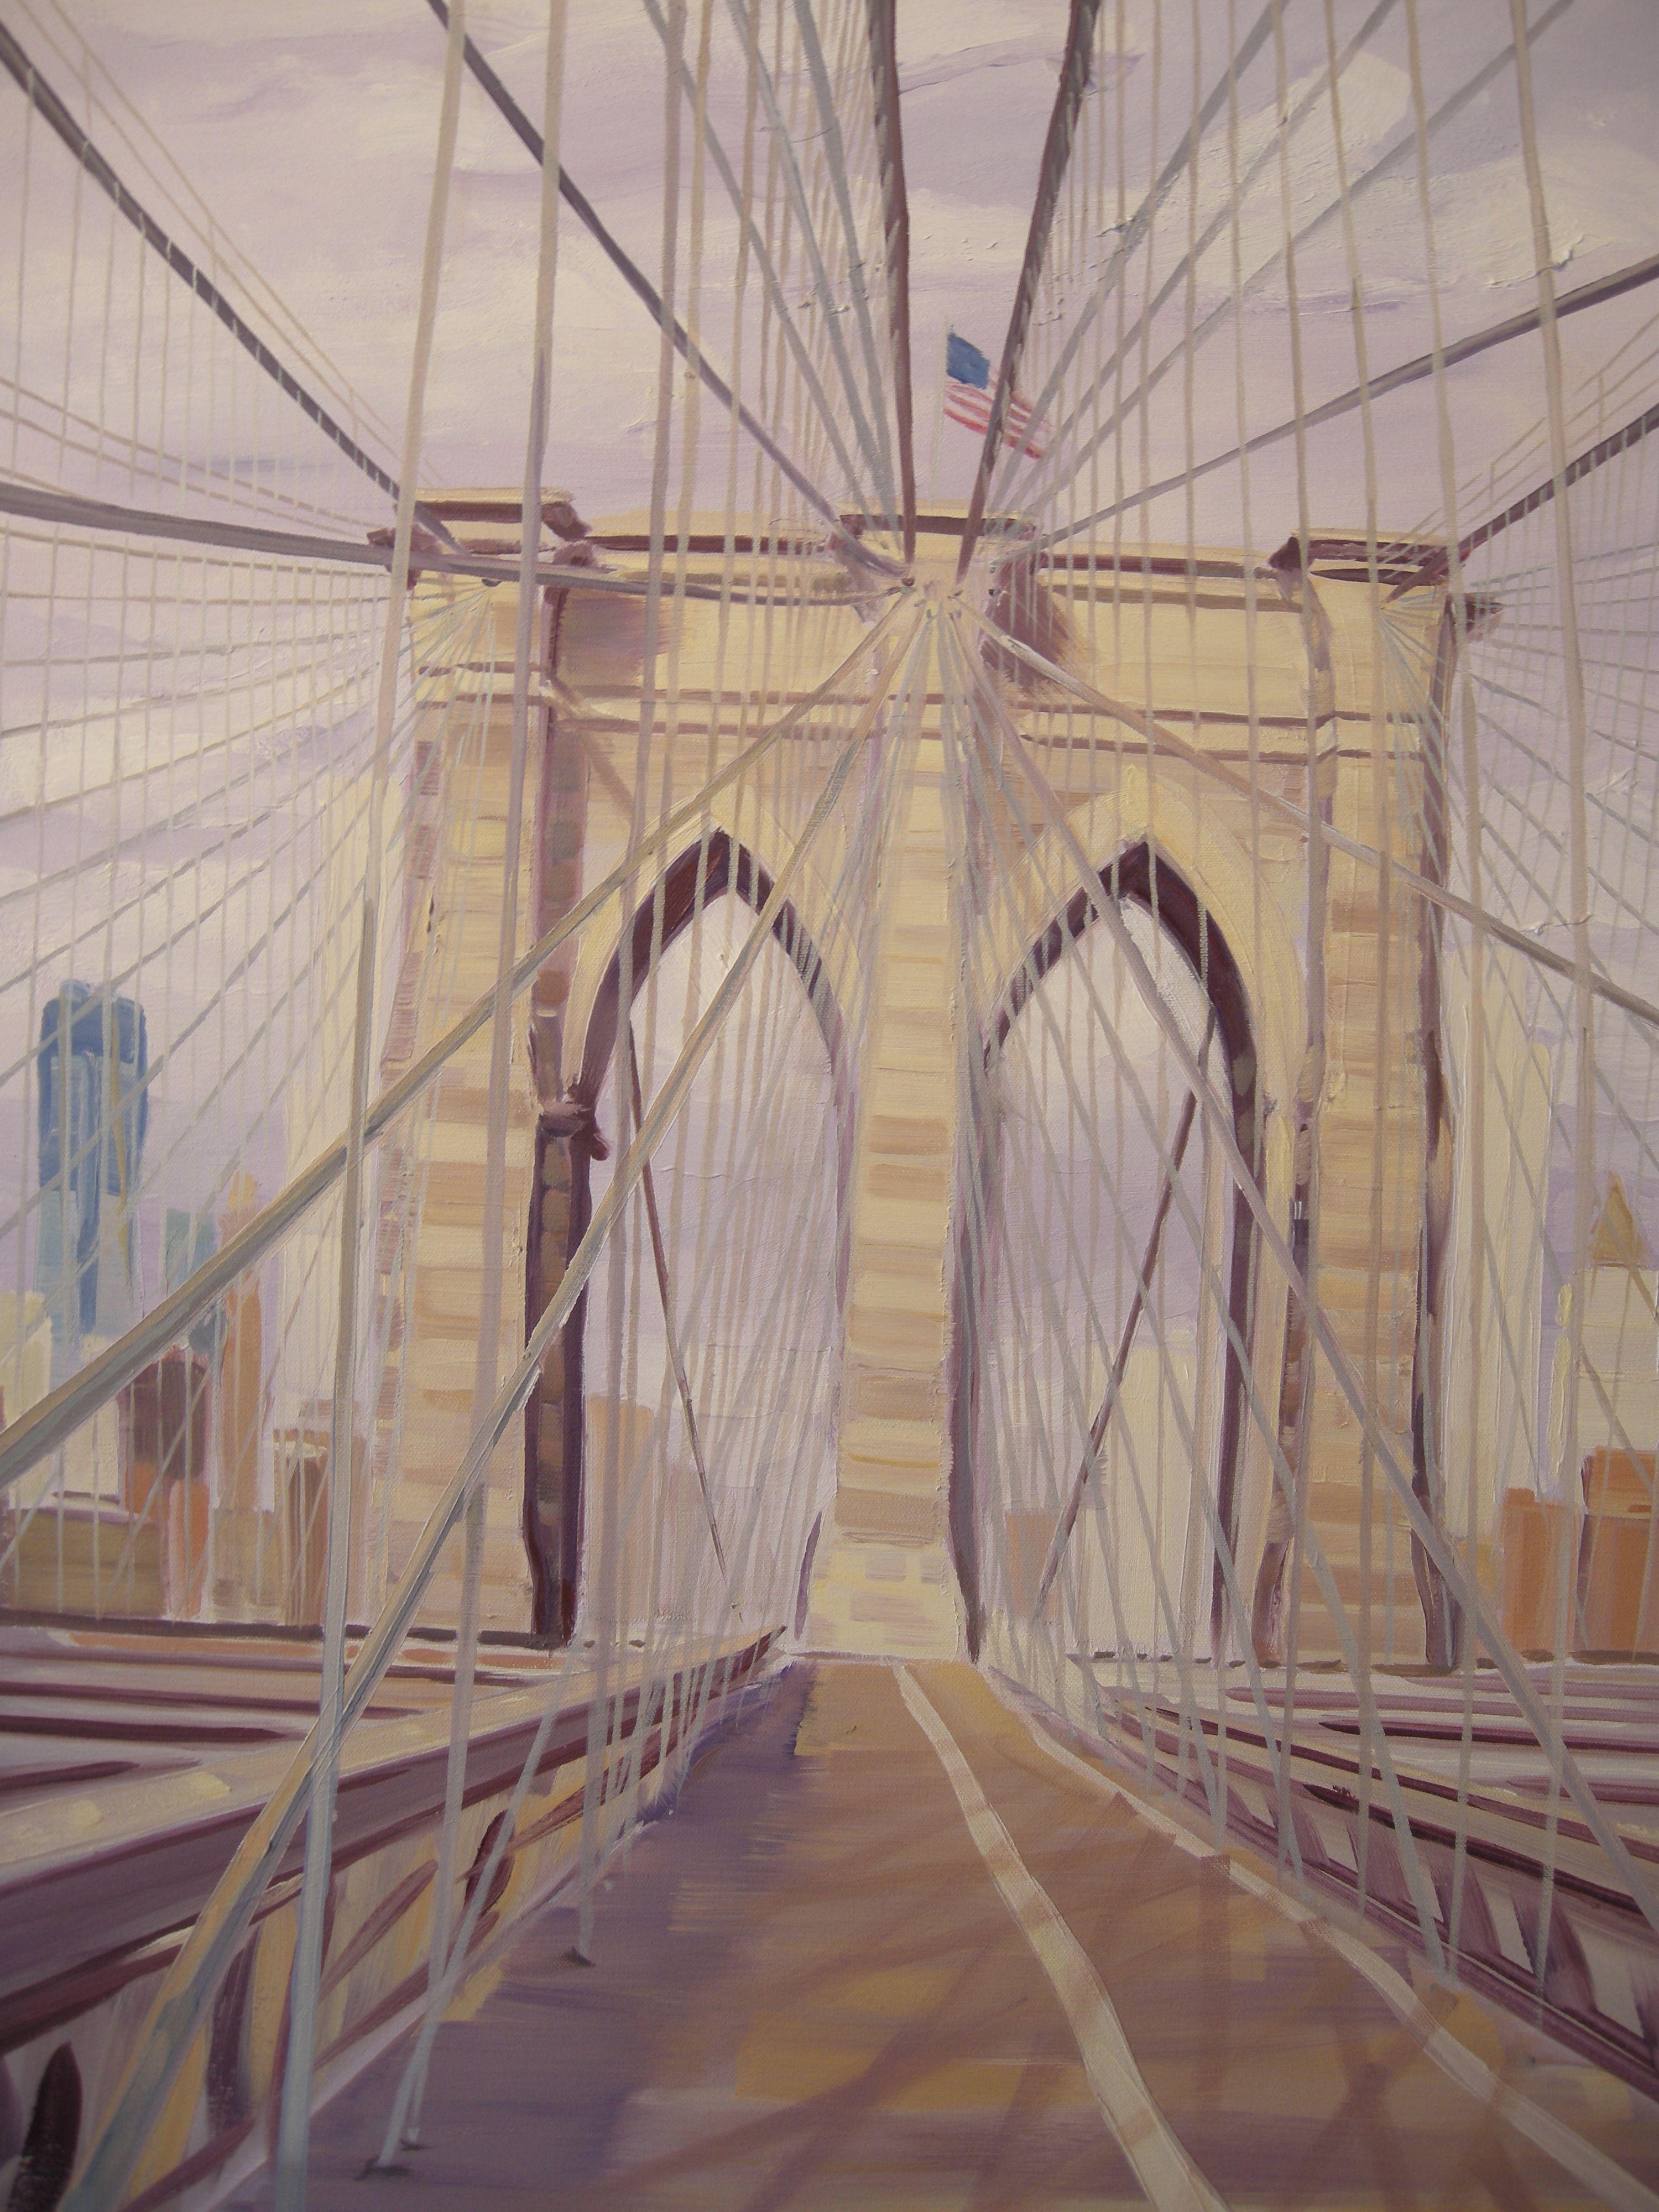 Une promenade sur le pont de Brooklyn en direction de Manhattan en plein soleil a offert un éblouissant entrecroisement de câbles complexes rendu encore plus beau par le jeu du soleil et de l'ombre : : Peinture : : Réalisme : : Cette pièce est